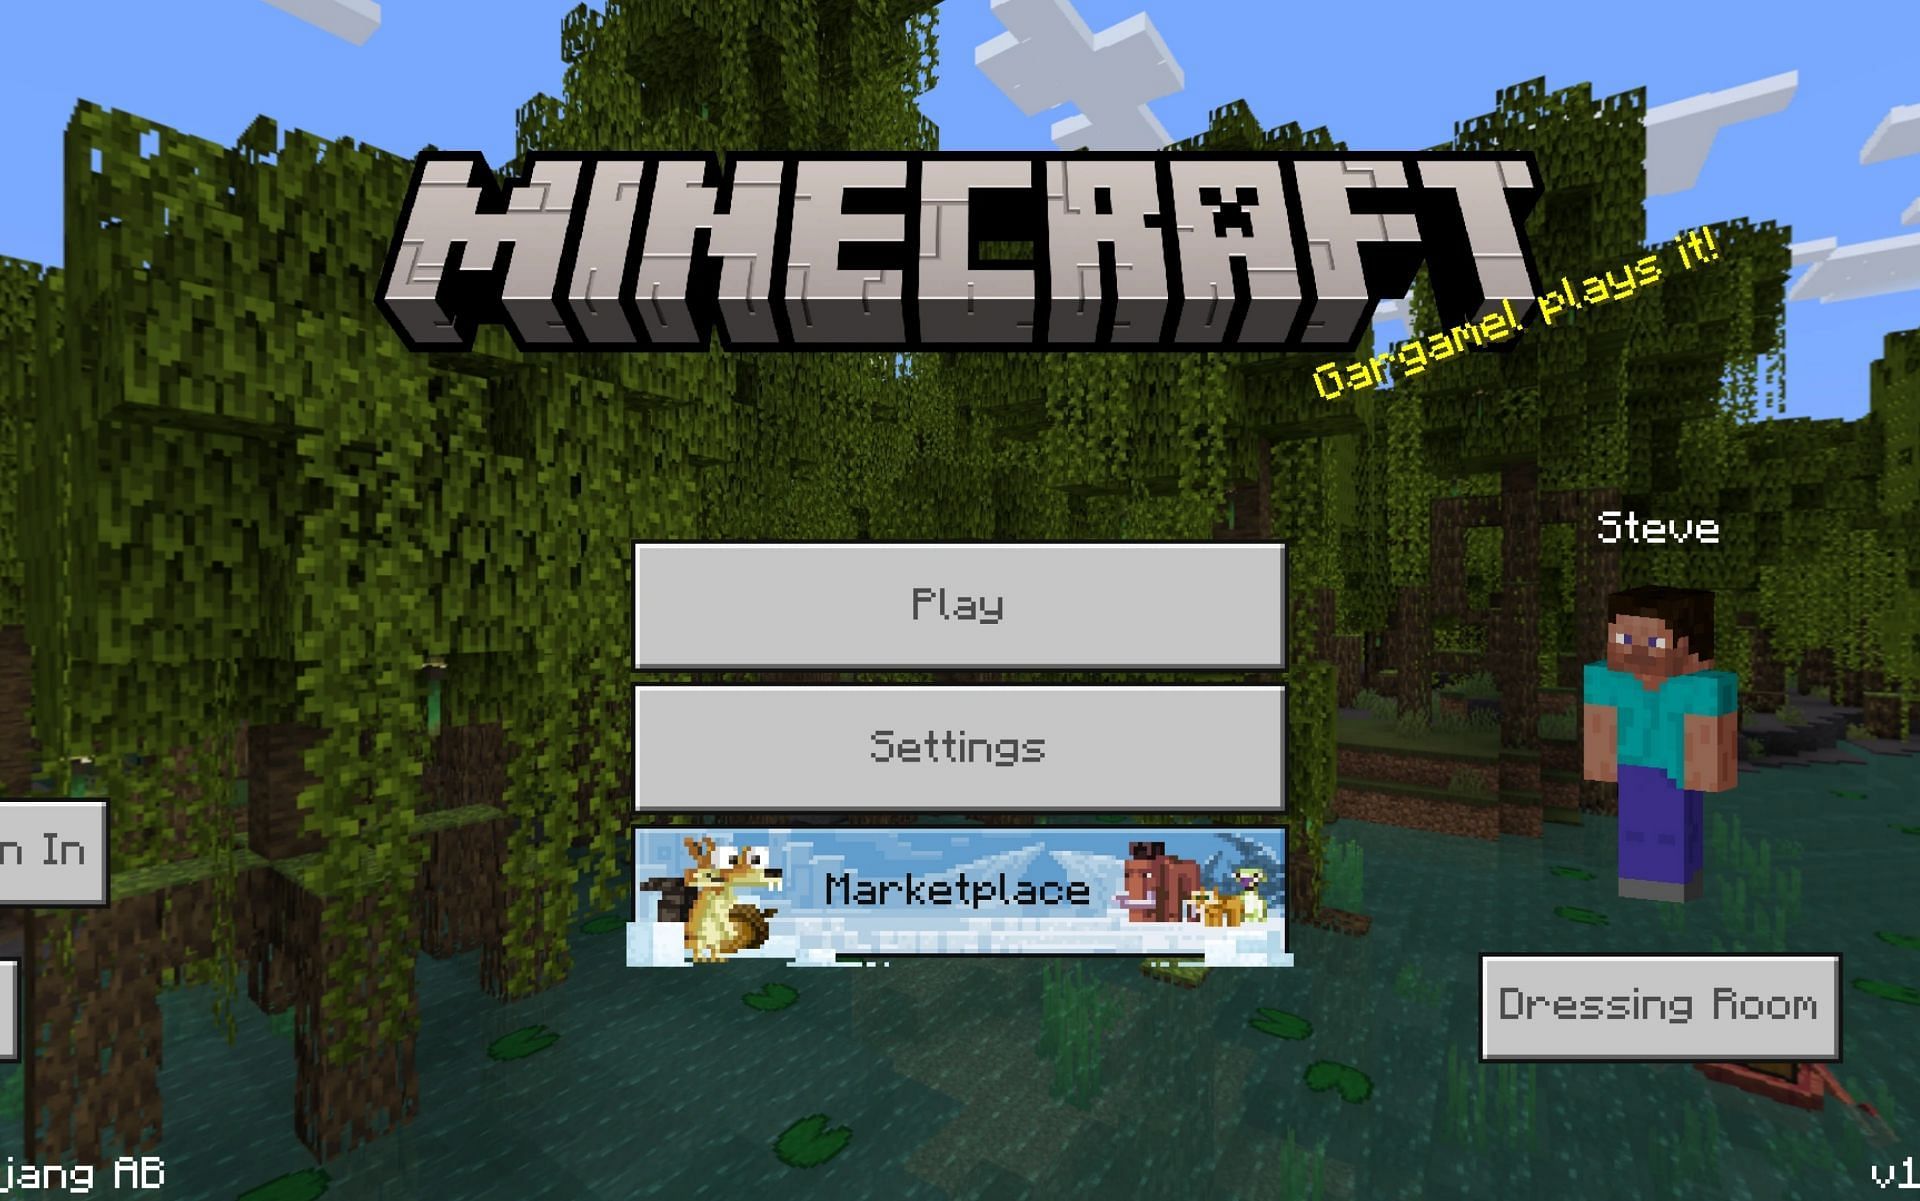 Download Minecraft Bedrock 1.19